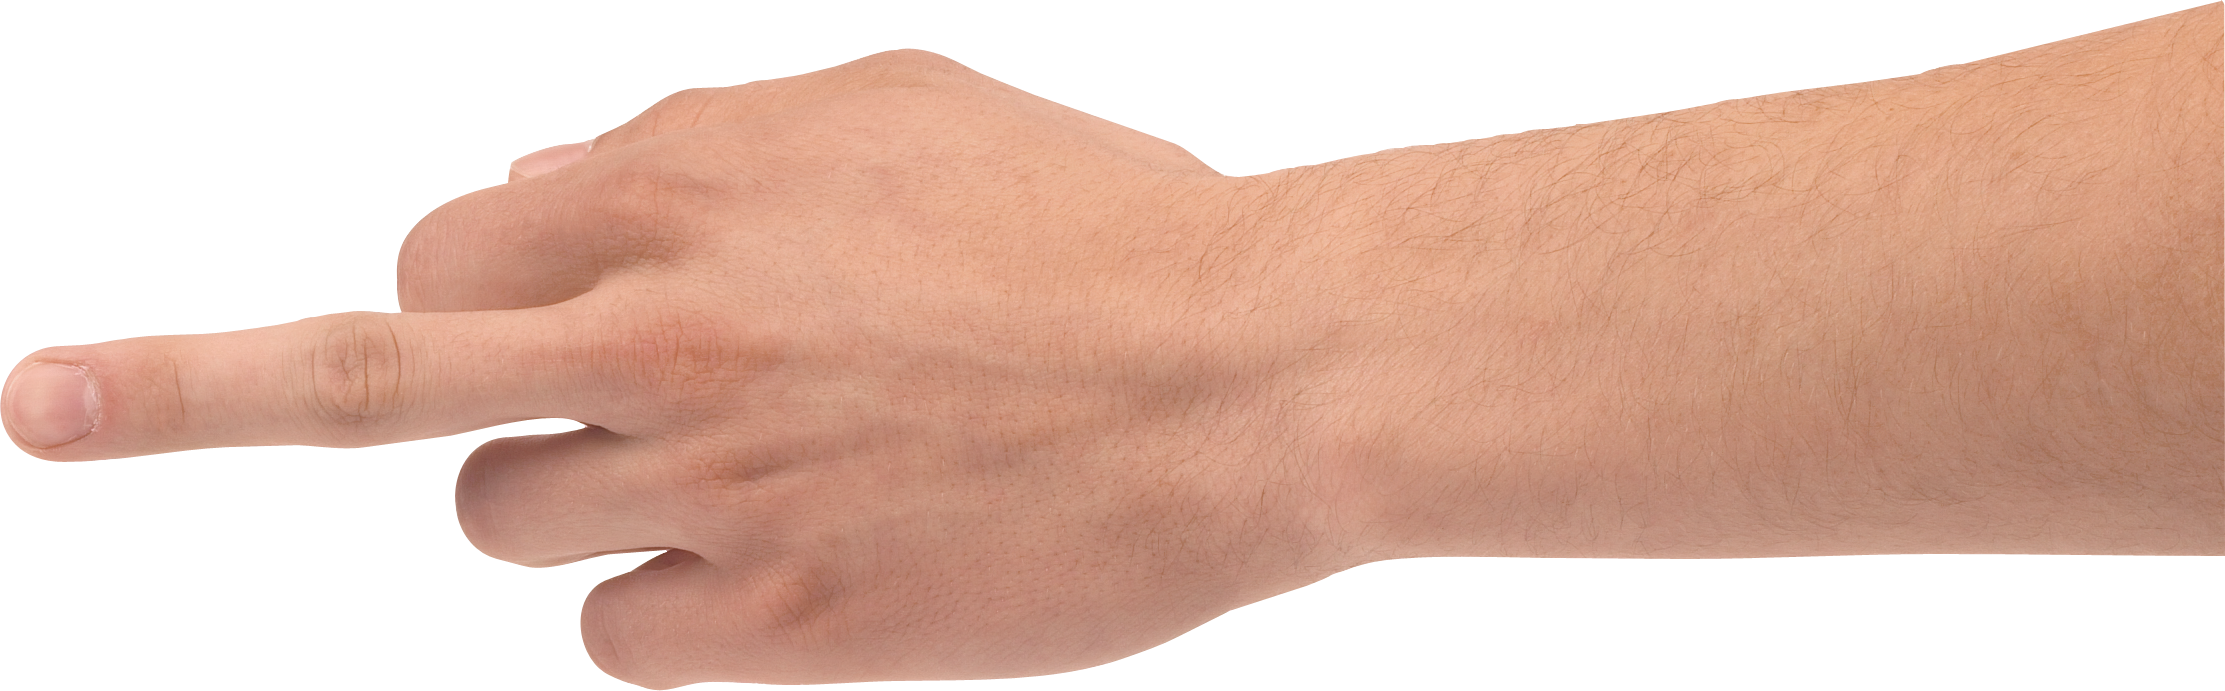 clipart hand forearm